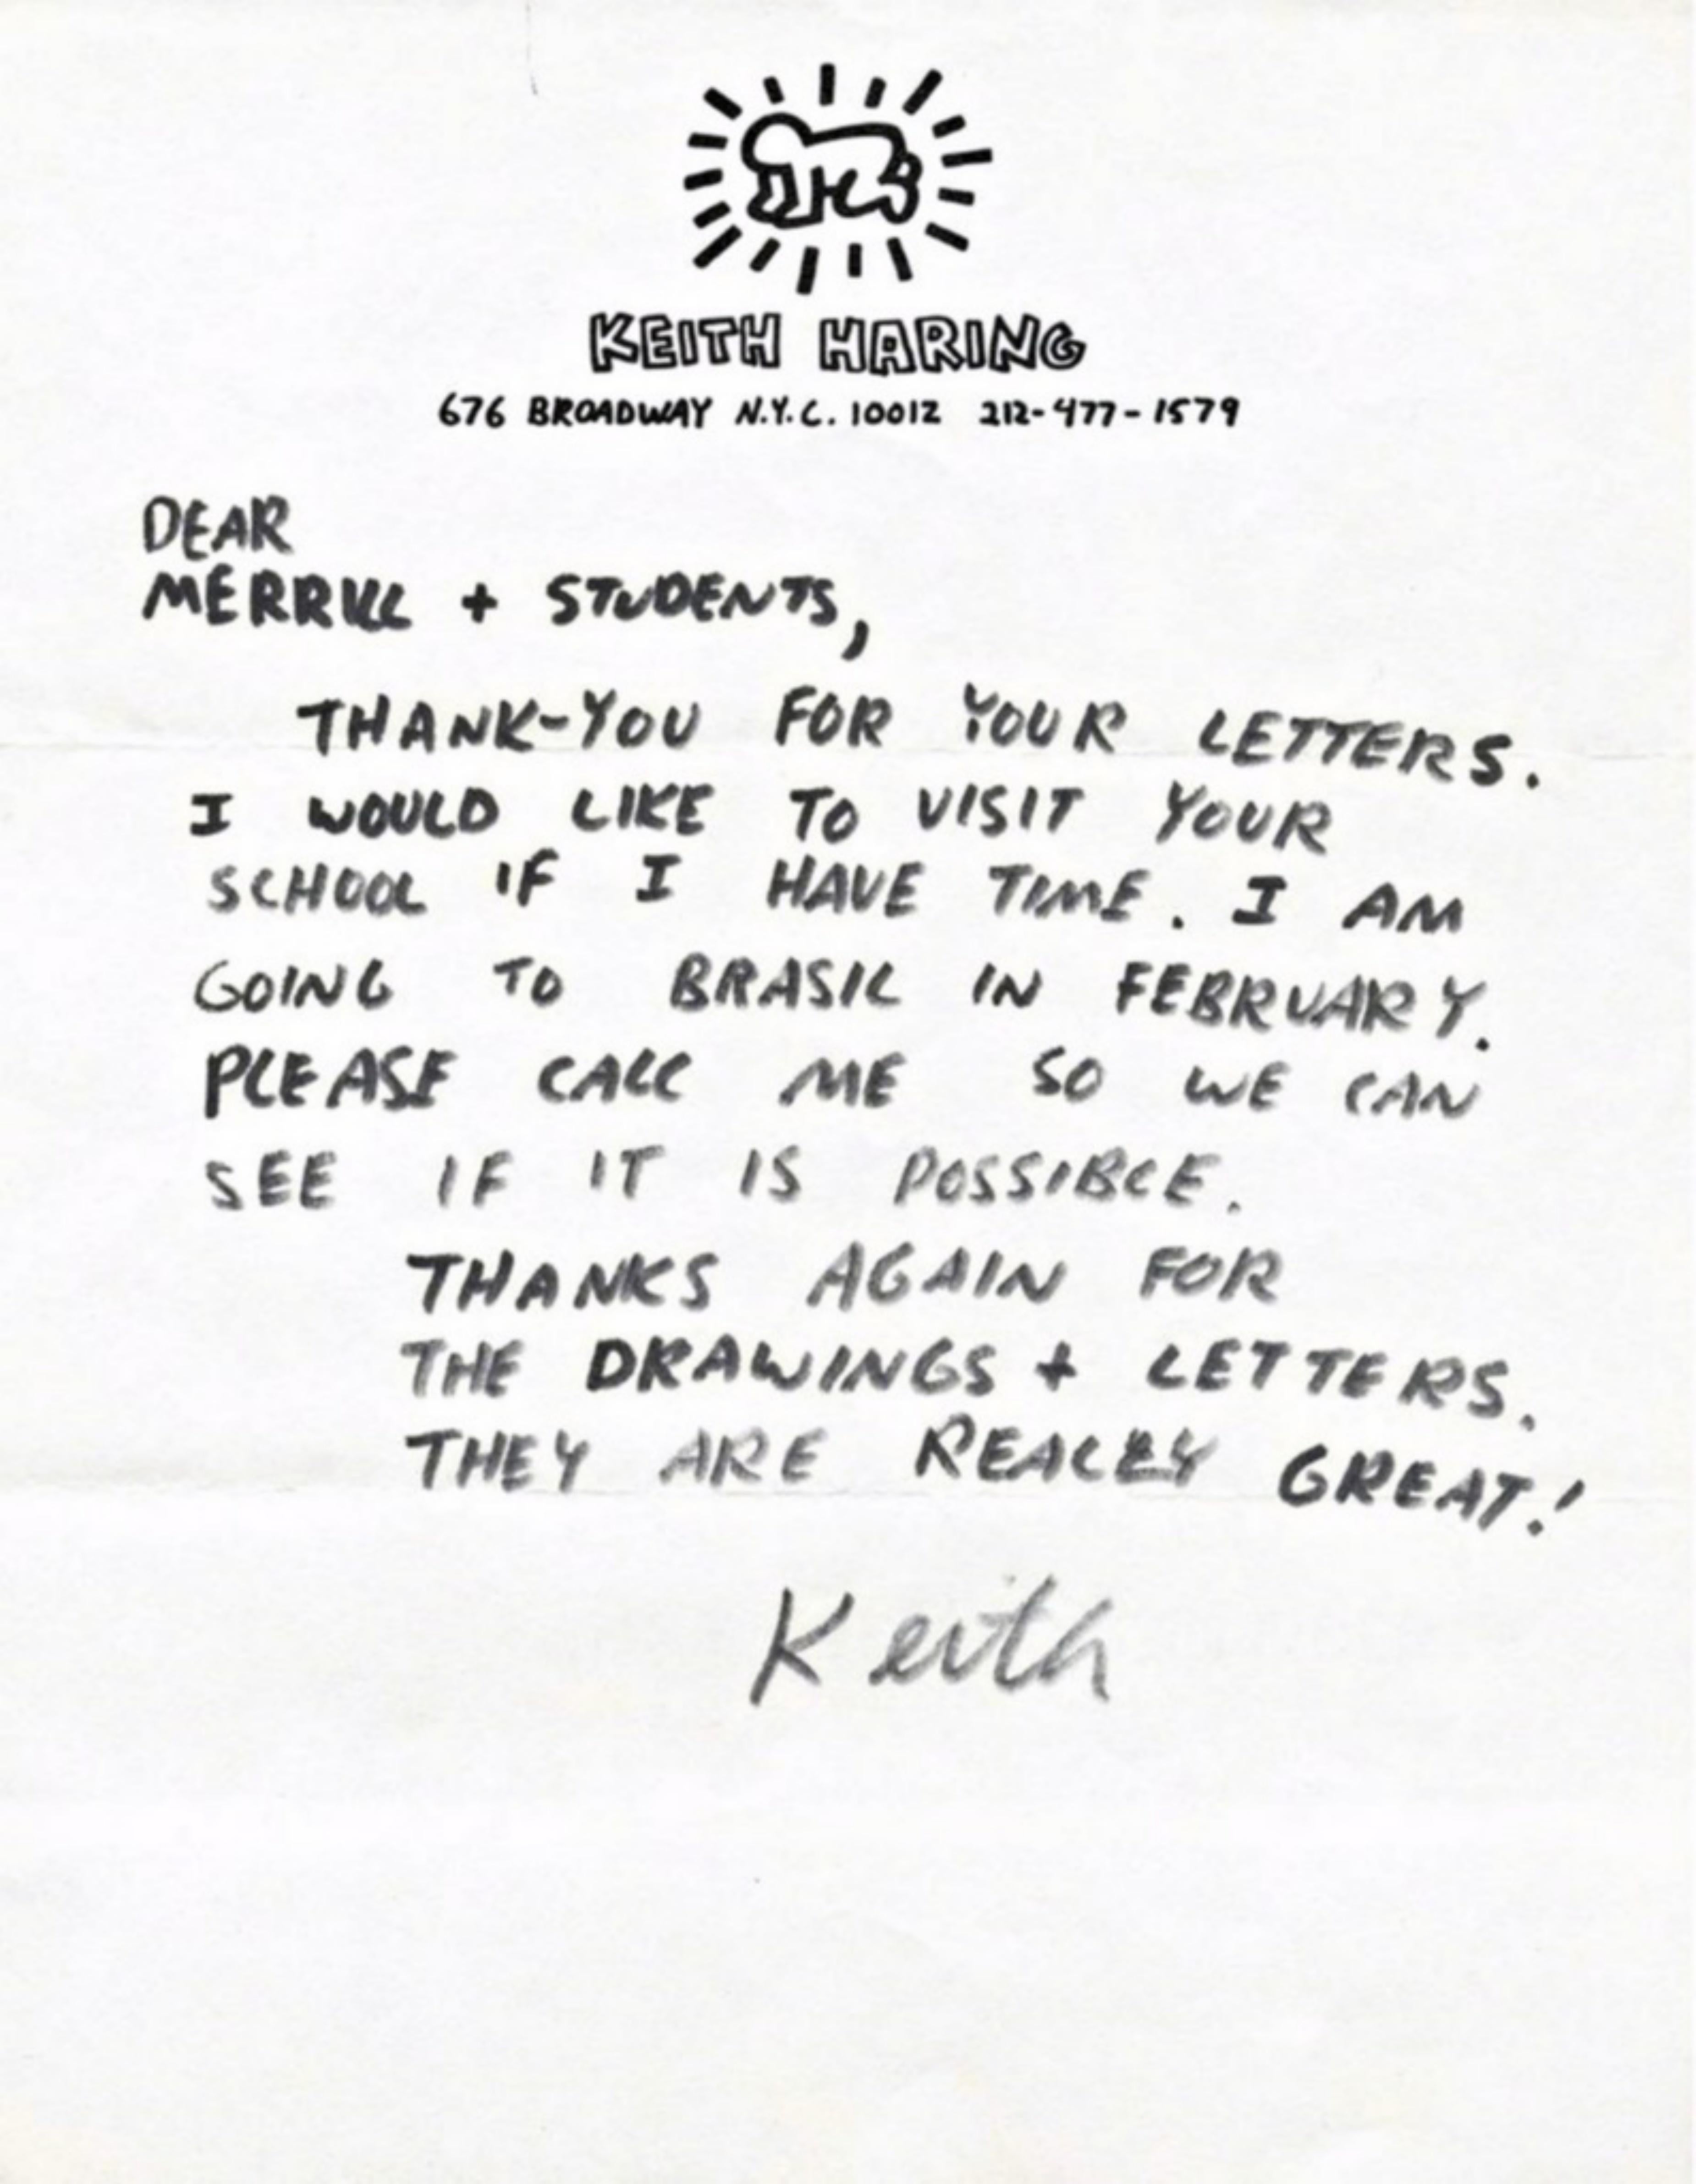 Keith Haring
Lettre originale manuscrite, signée à la main, ca. 1987
Encre sur papier à en-tête privé de Haring, écrit et signé à la main par Keith Haring
11 × 8 1/2 pouces
Non encadré
Pièce unique et originale : charmante lettre manuscrite et